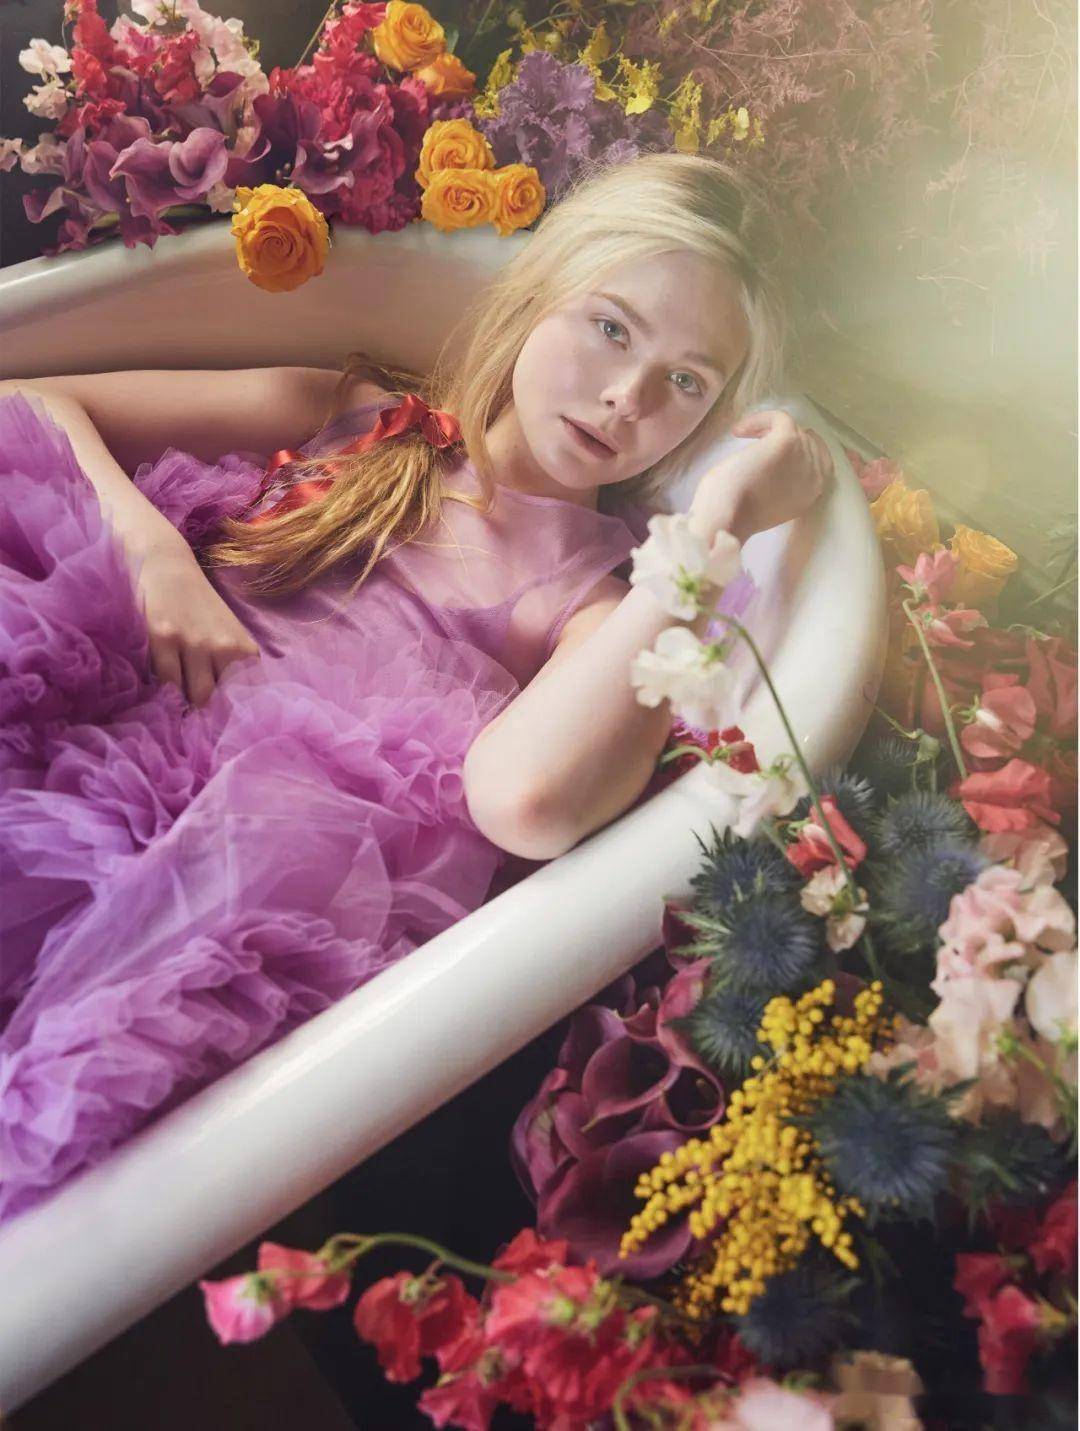 艾丽·范宁《时尚芭莎》封面大片,仙裙造型宛如童话公主